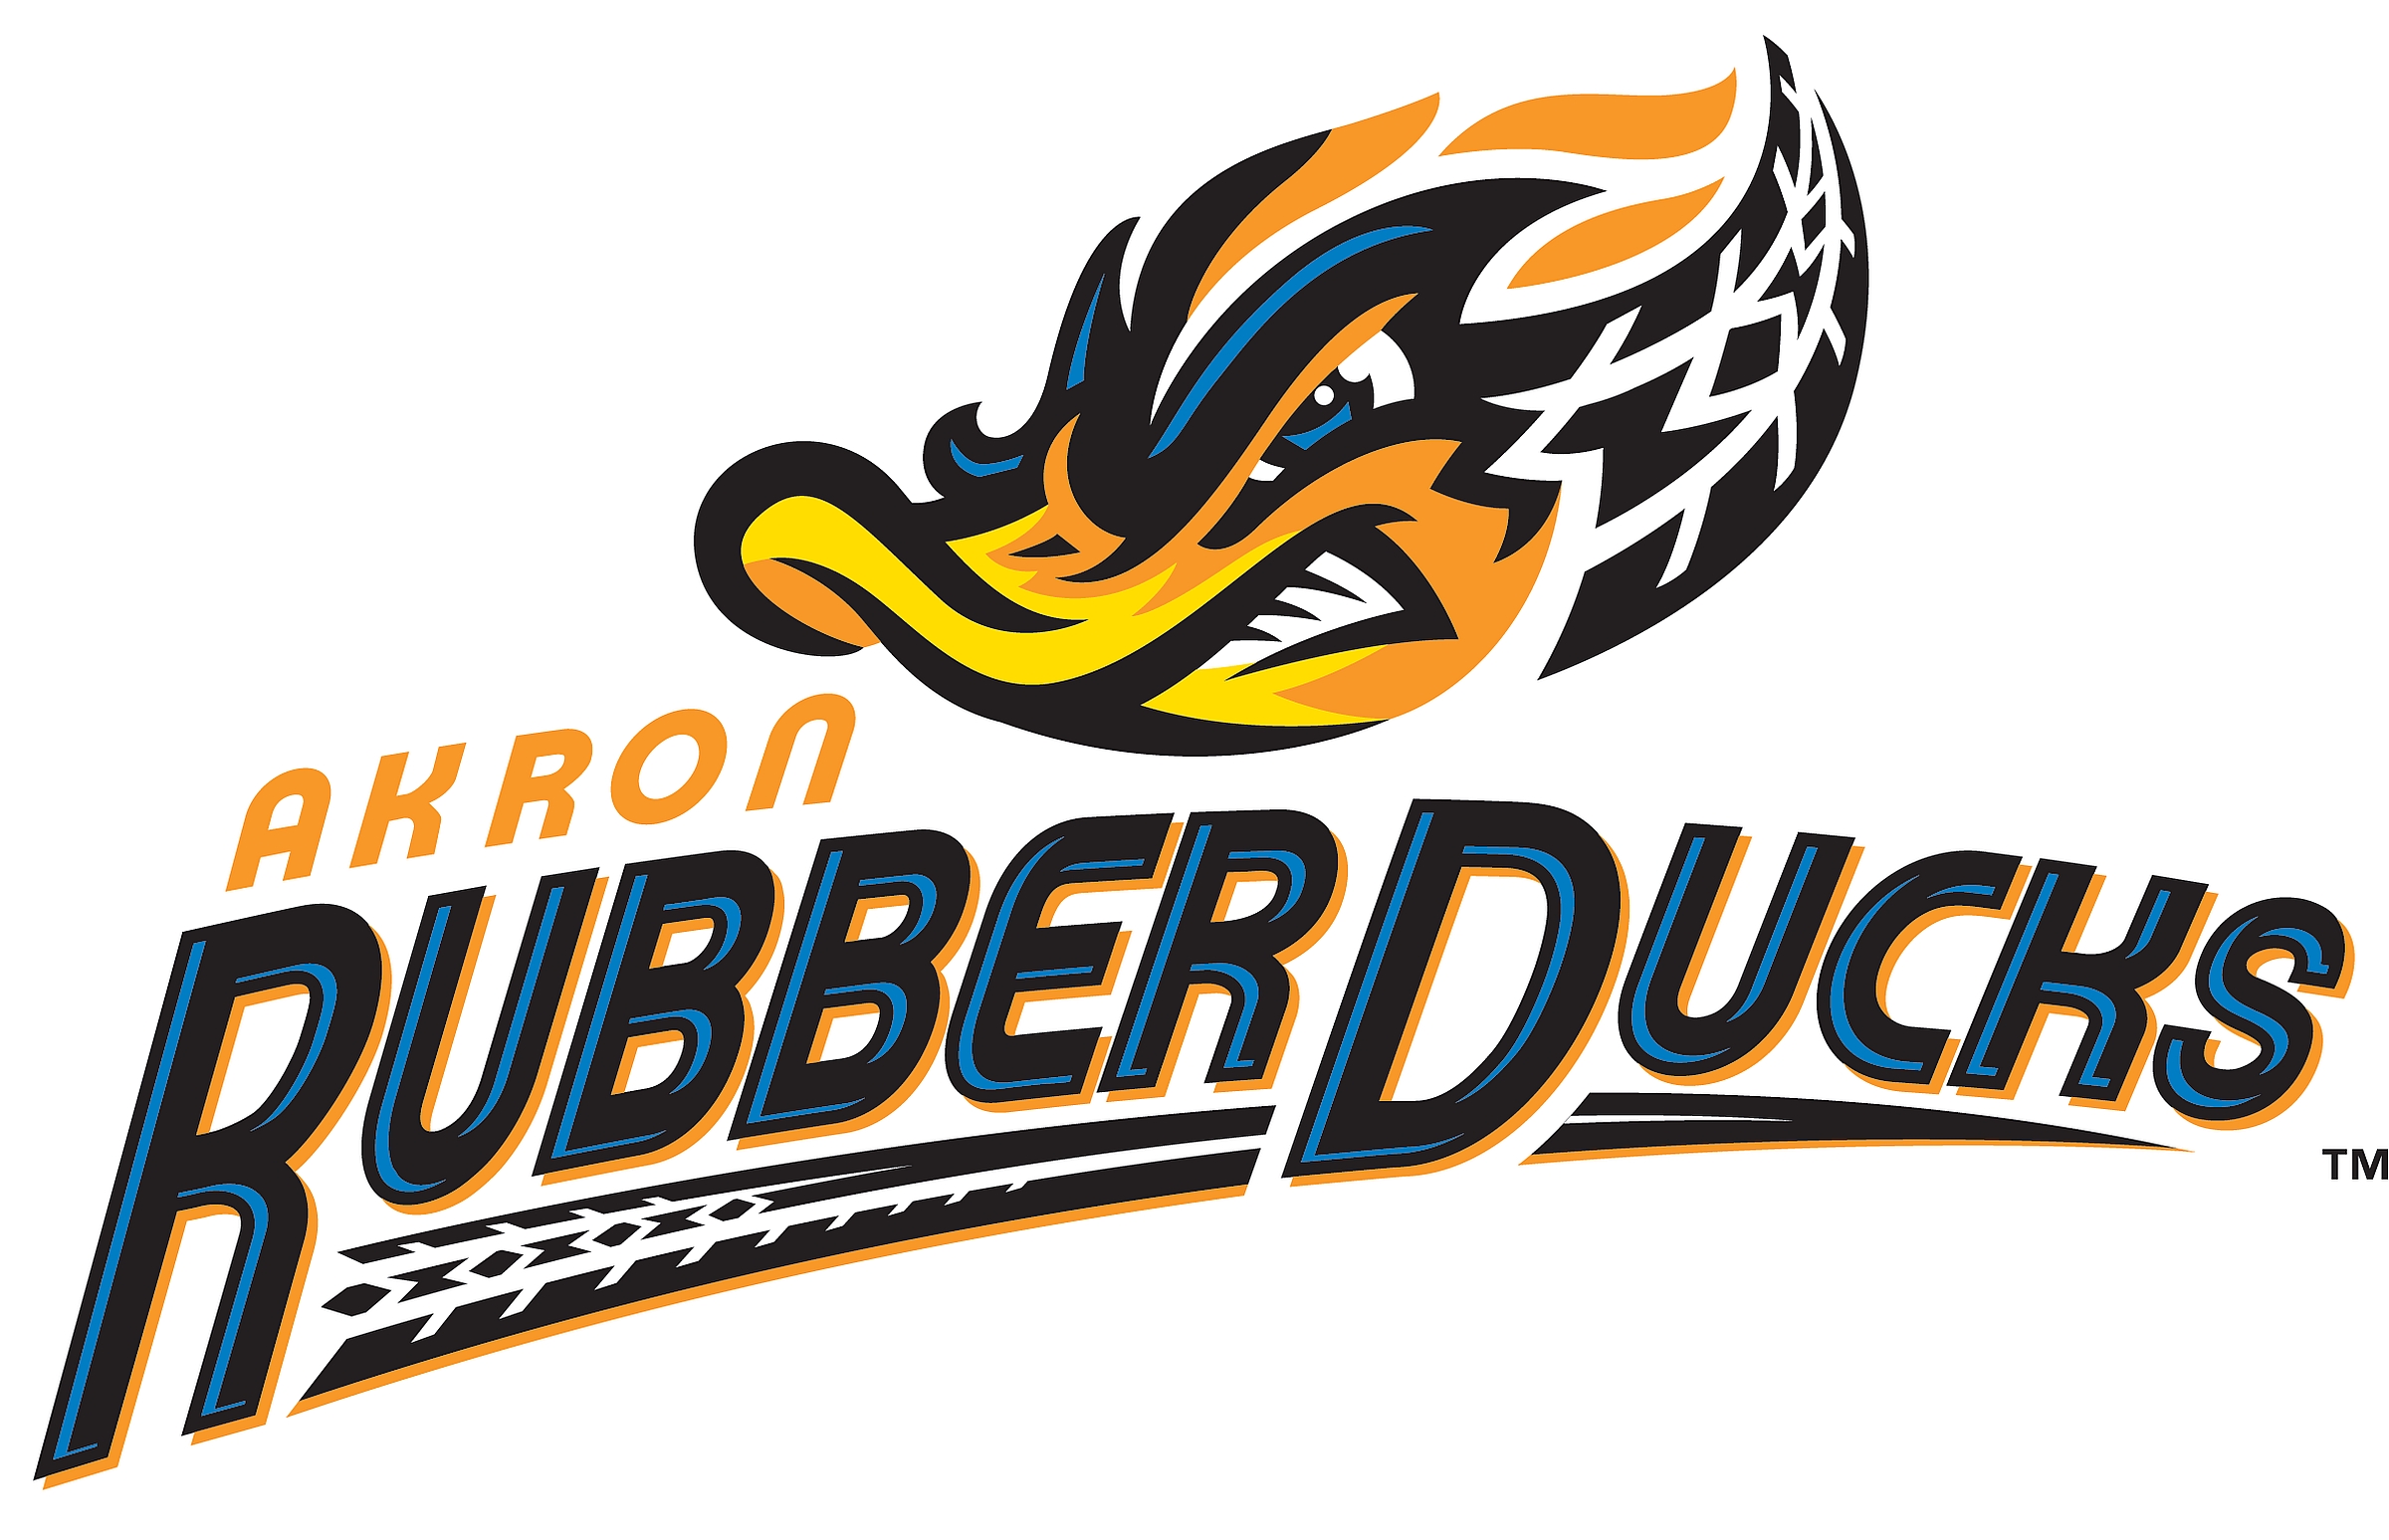 Free download Akron Rubber Ducks HD Sfondi [2400x1547] for your Desktop